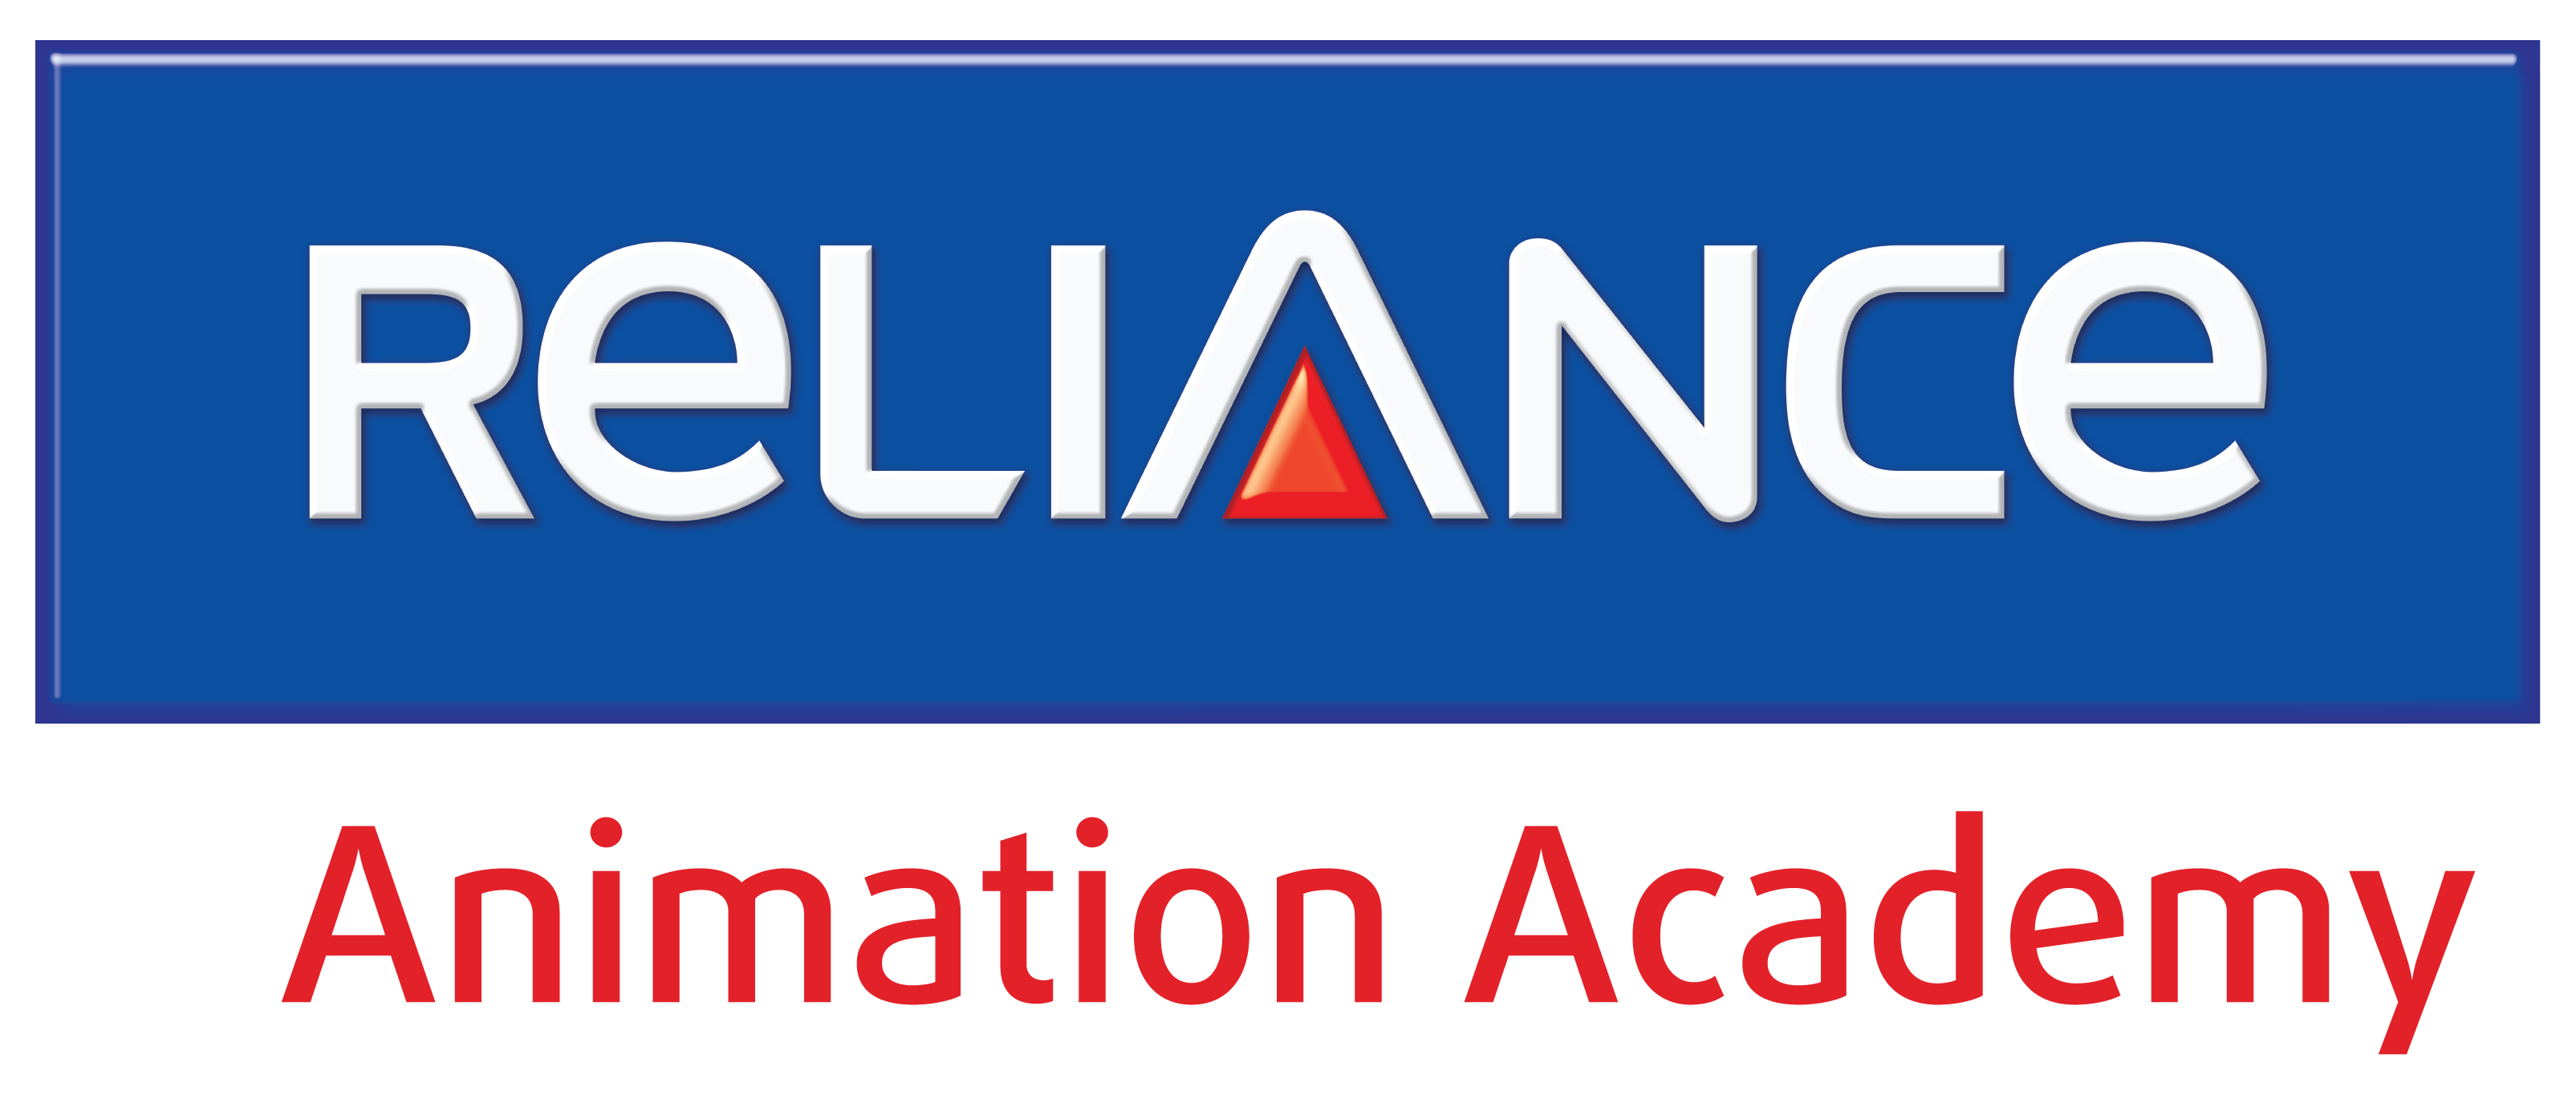 Reliance Animation Academy - Reliance Logo